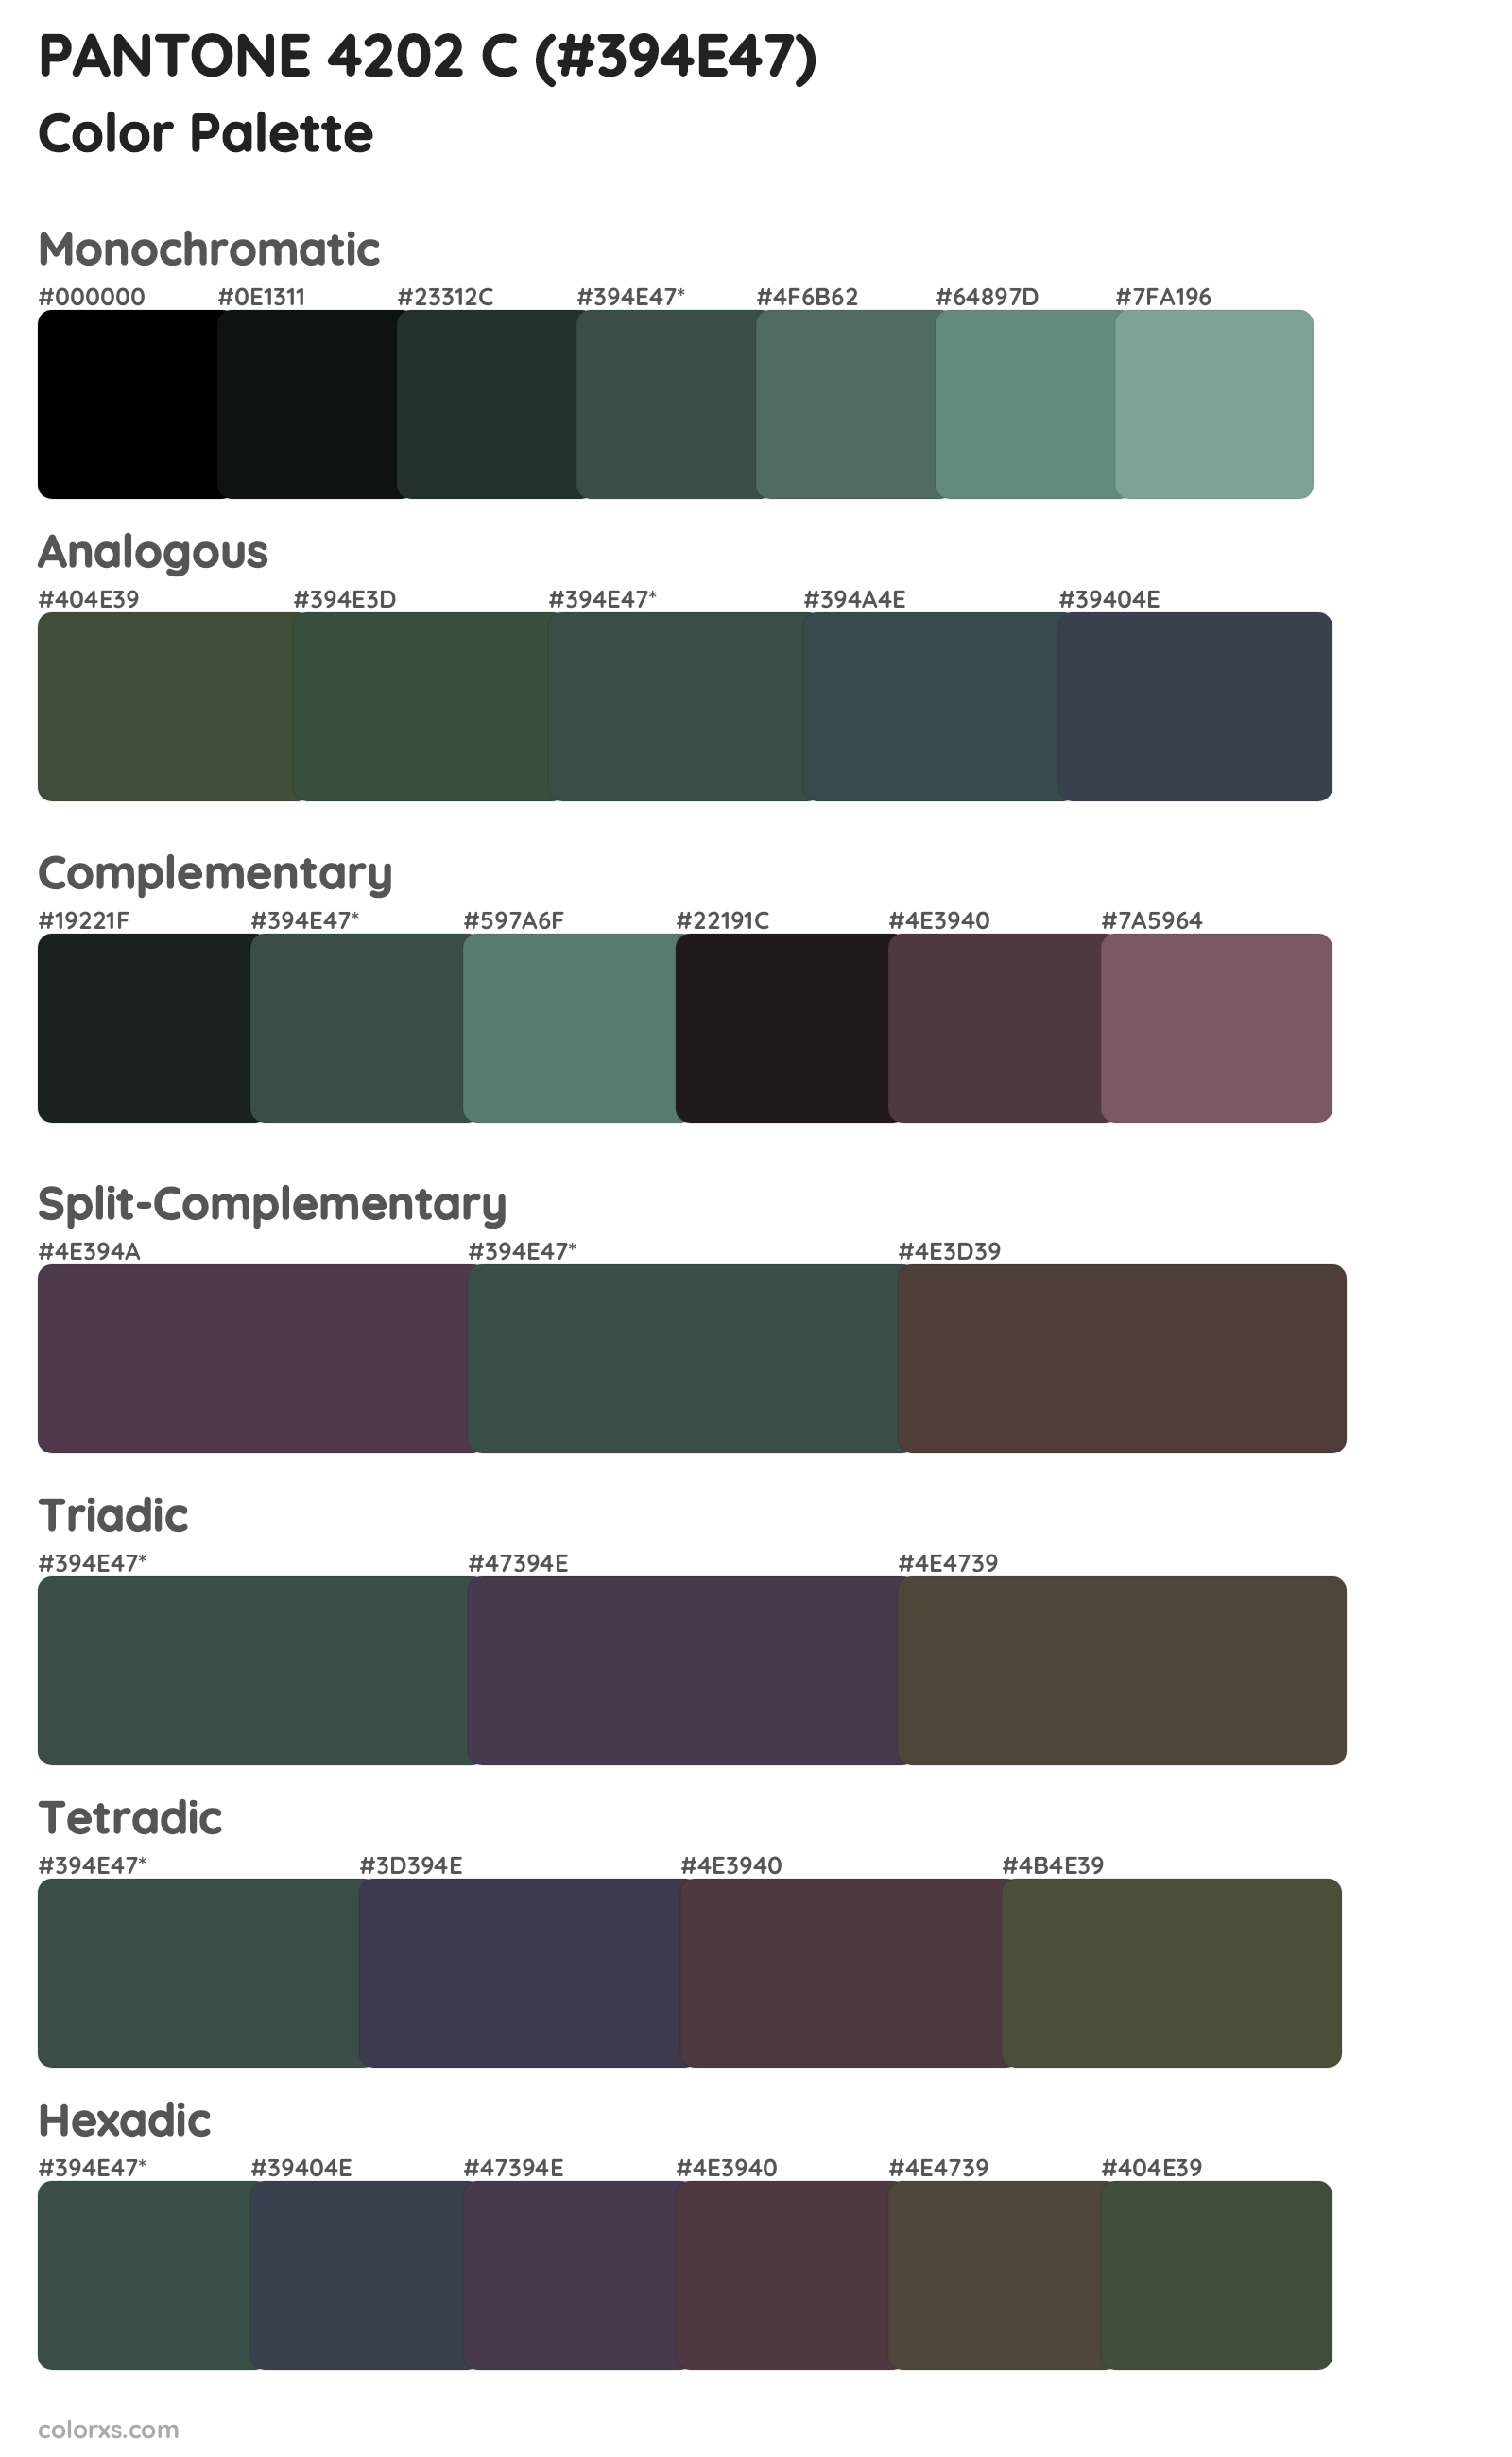 PANTONE 4202 C Color Scheme Palettes